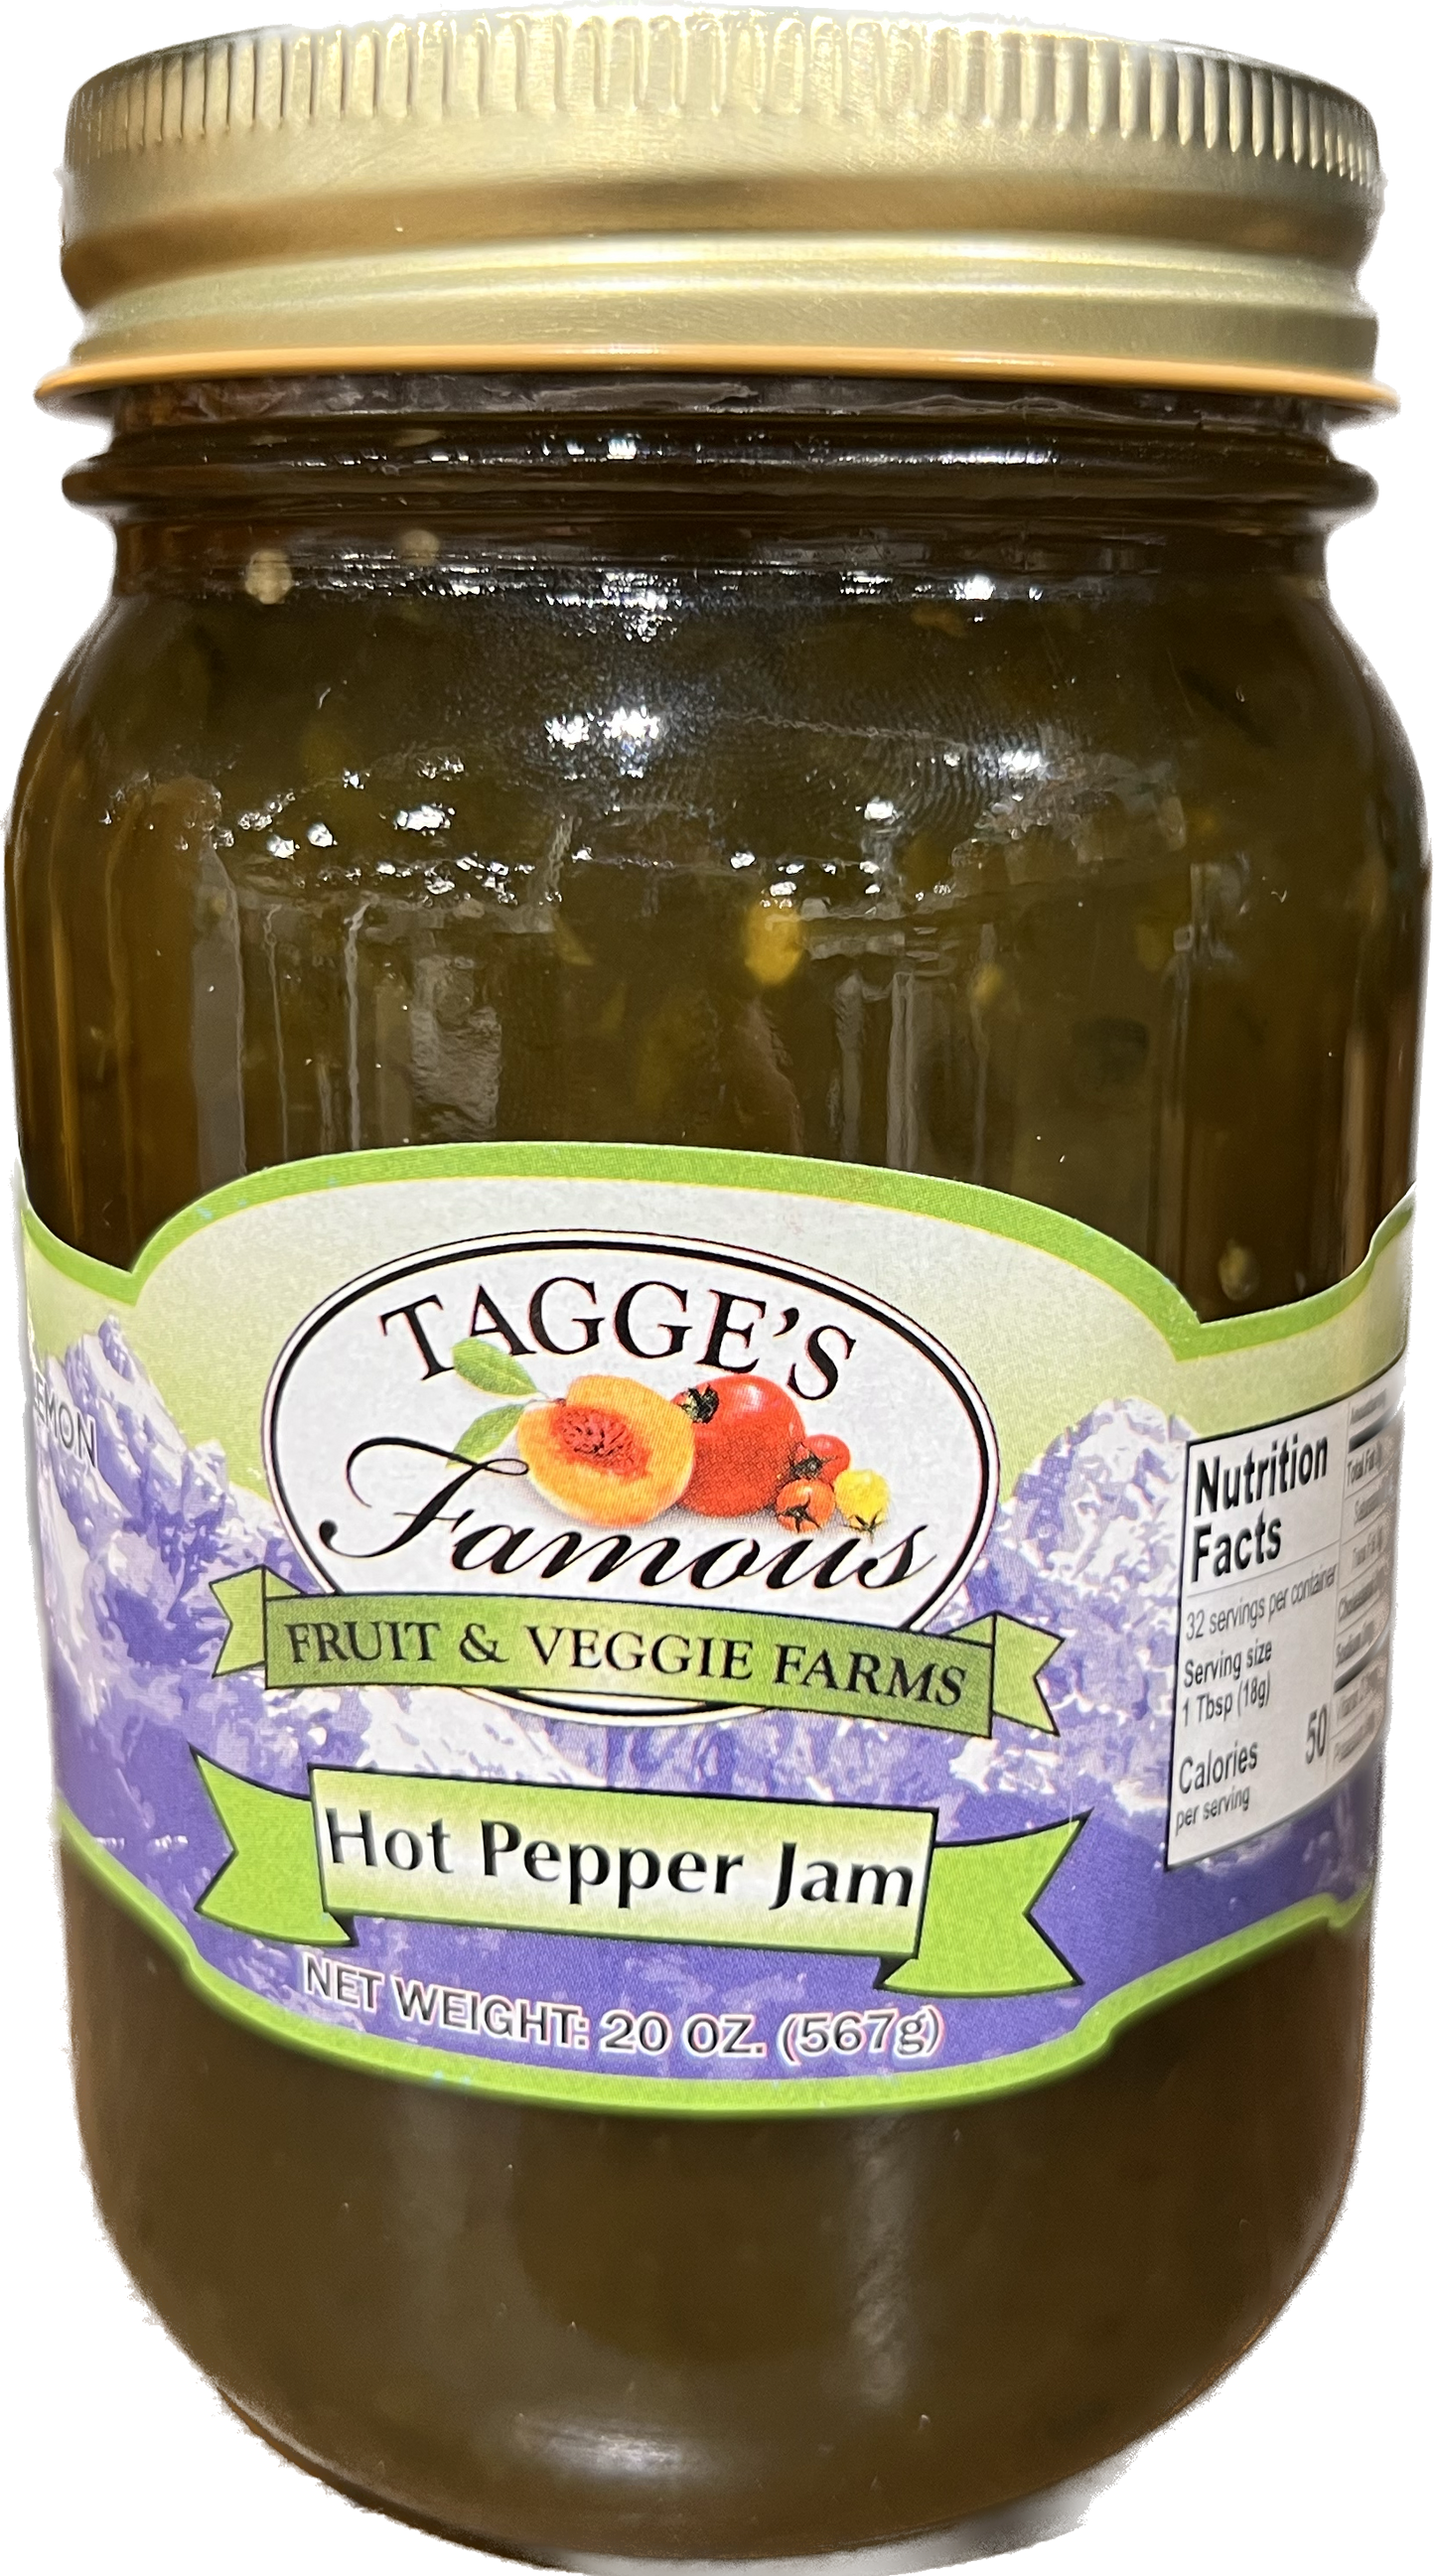 Hot pepper Jam - 17 oz